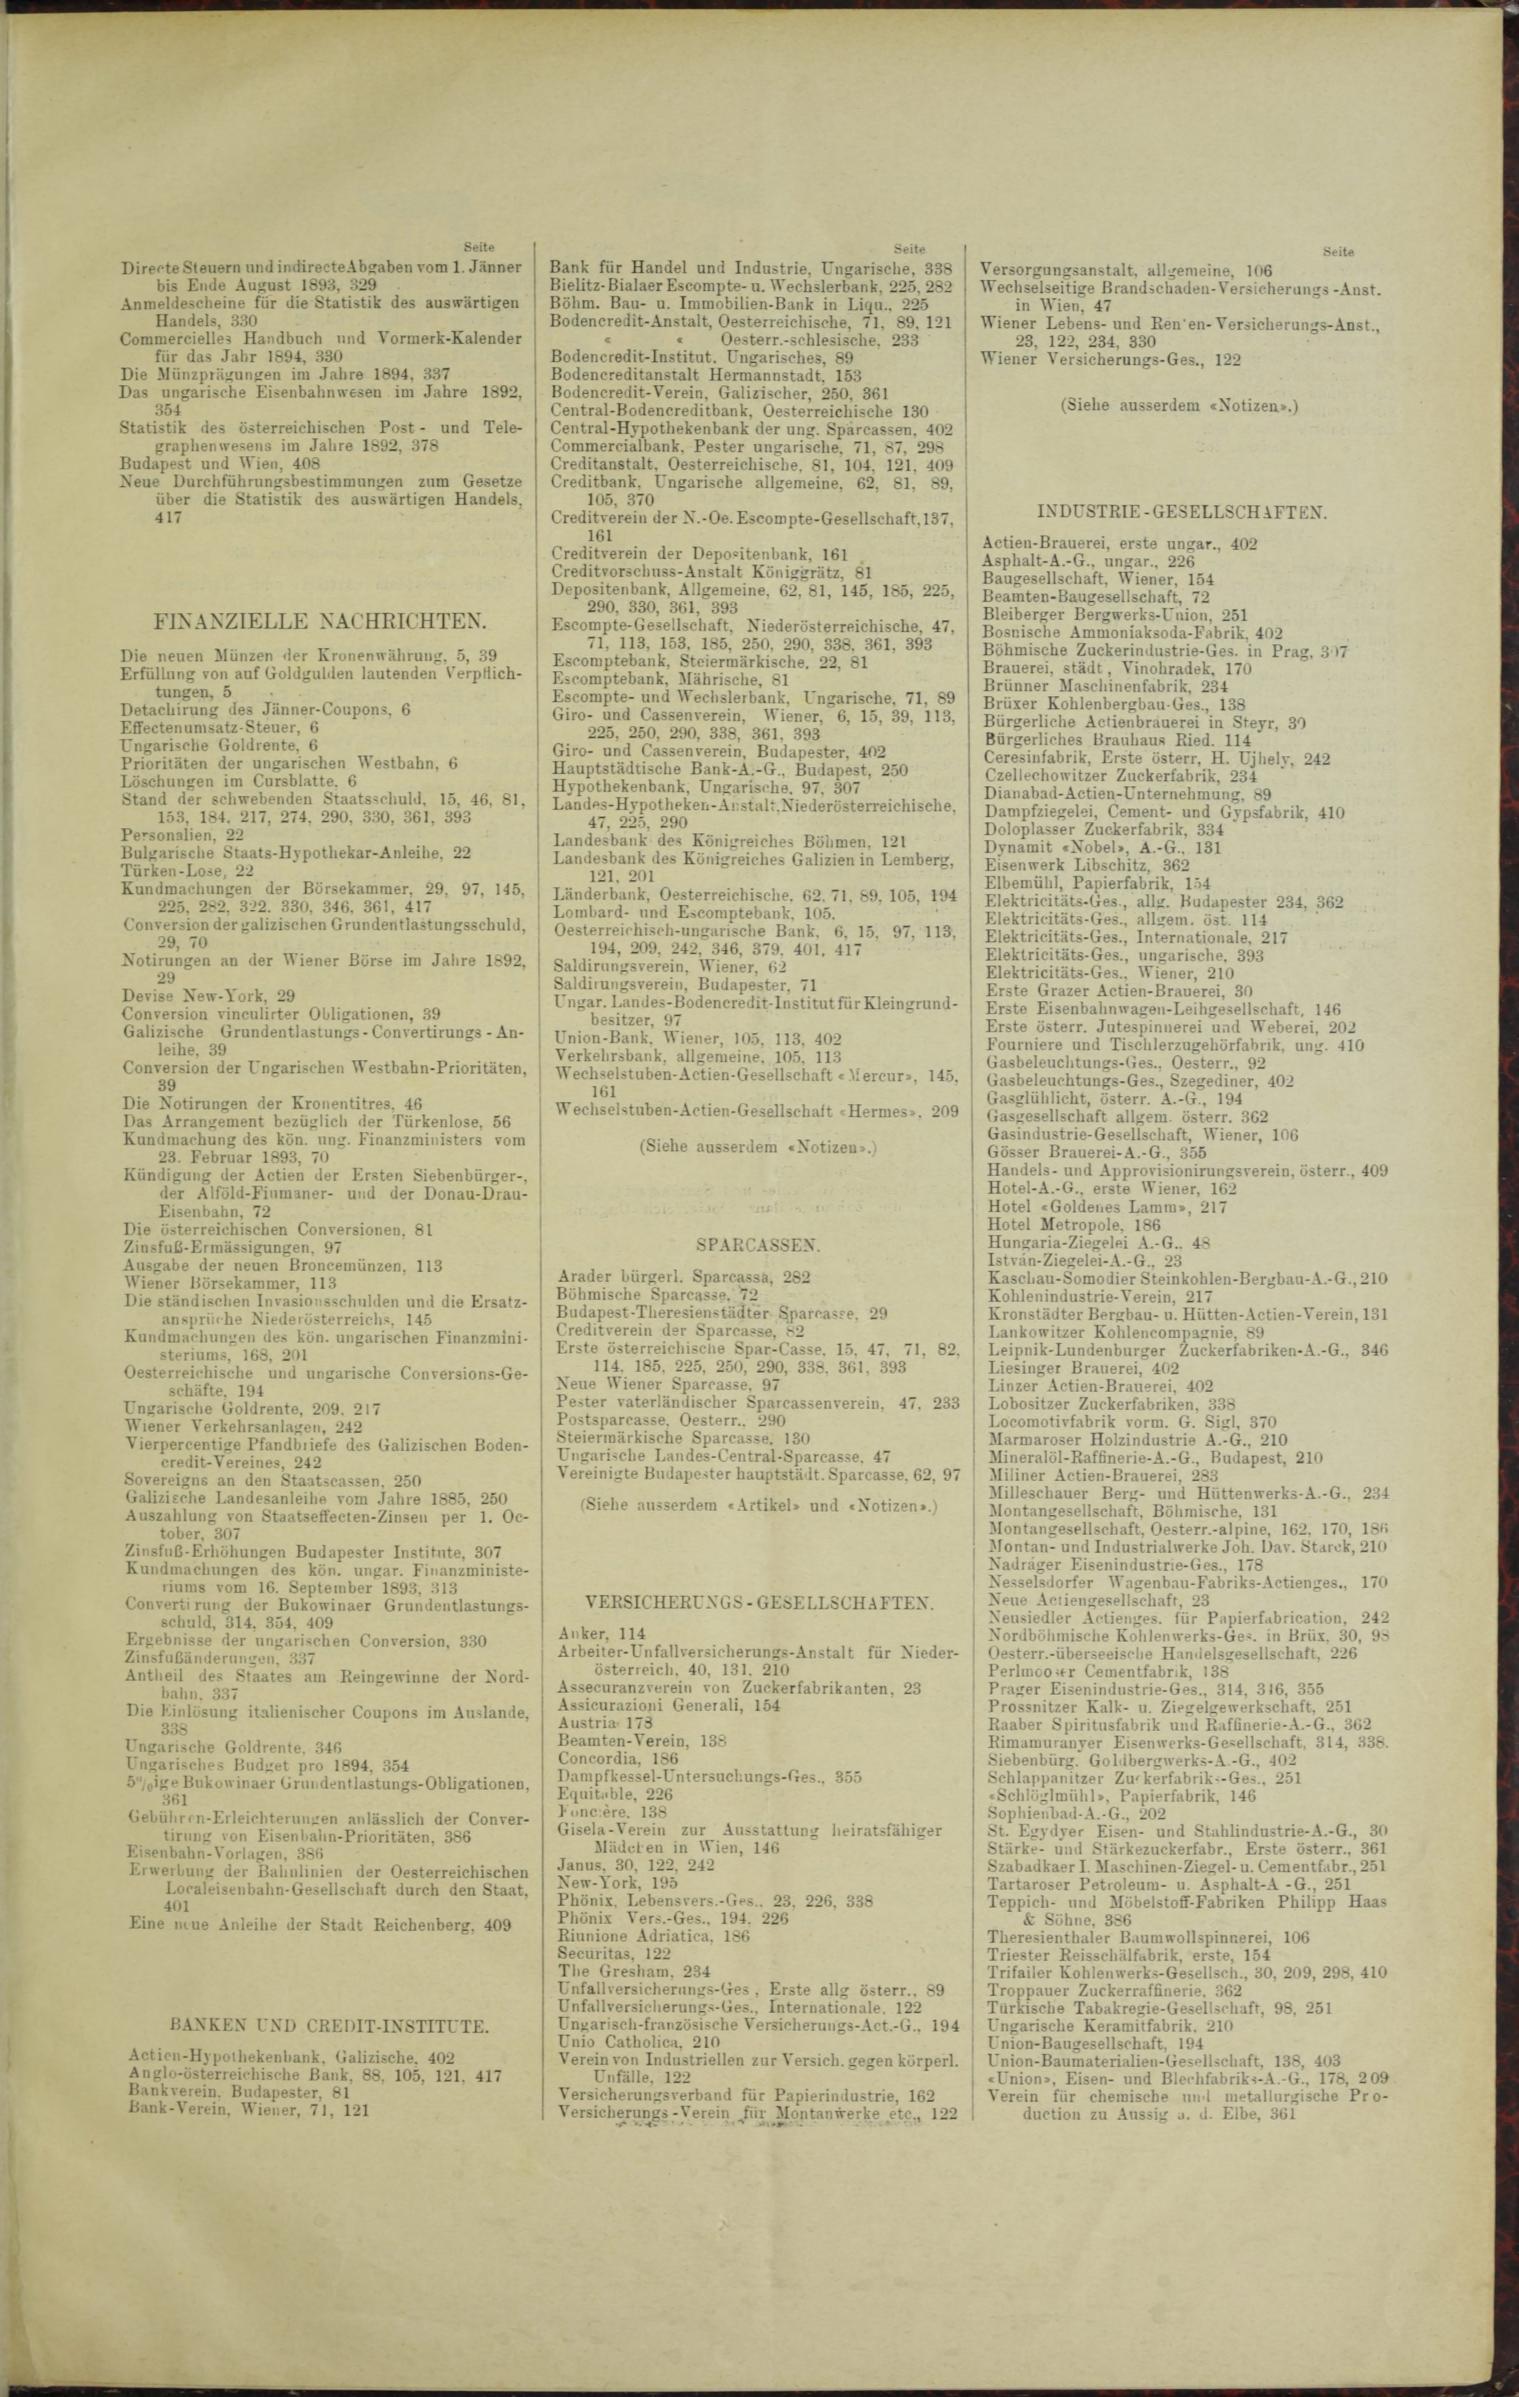 Der Tresor 06.07.1893 - Seite 11